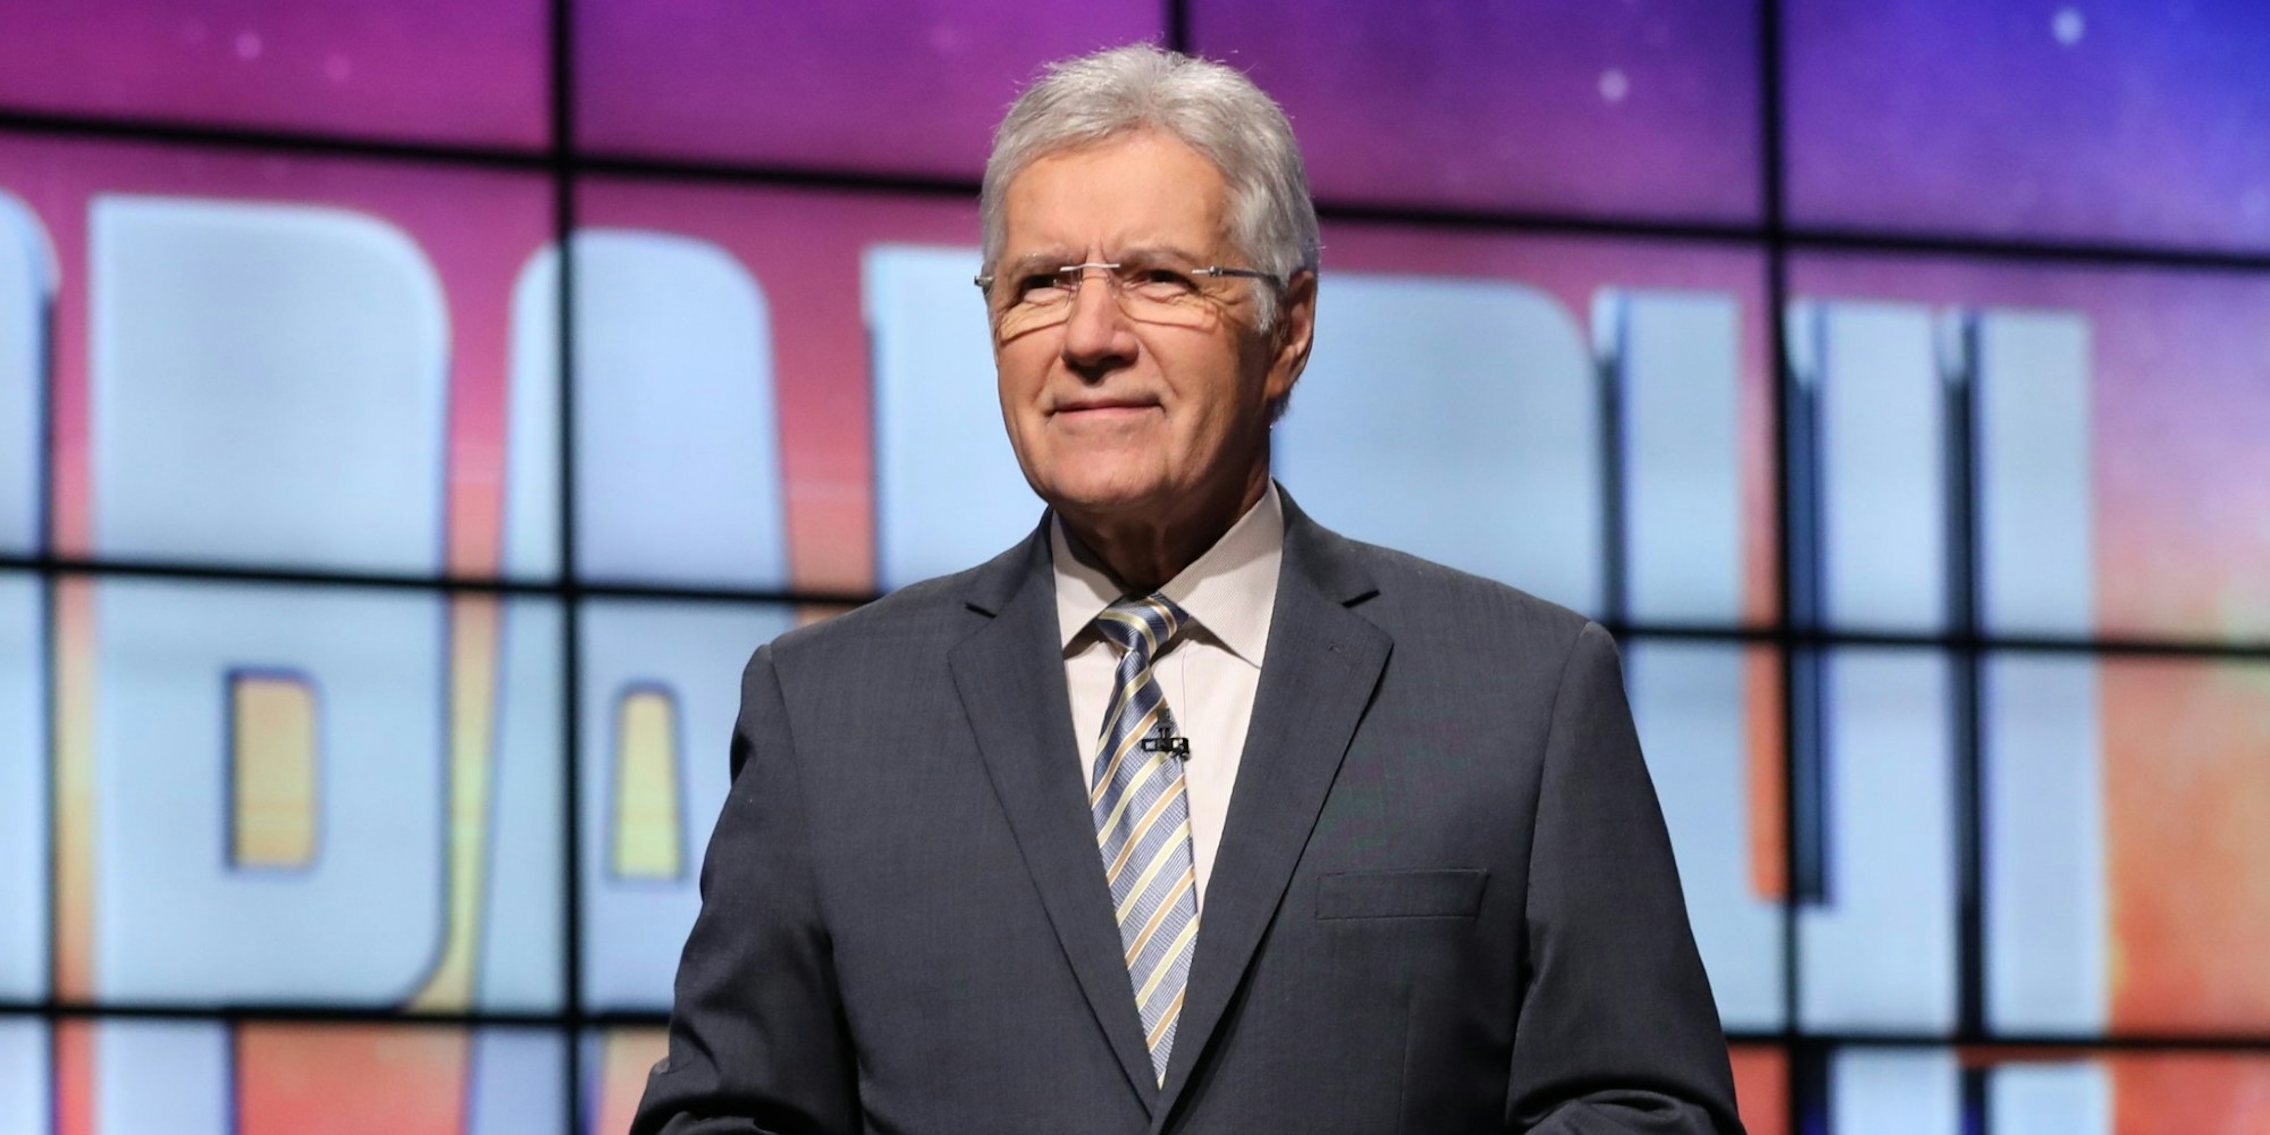 Jeopardy! host Alex Trebek